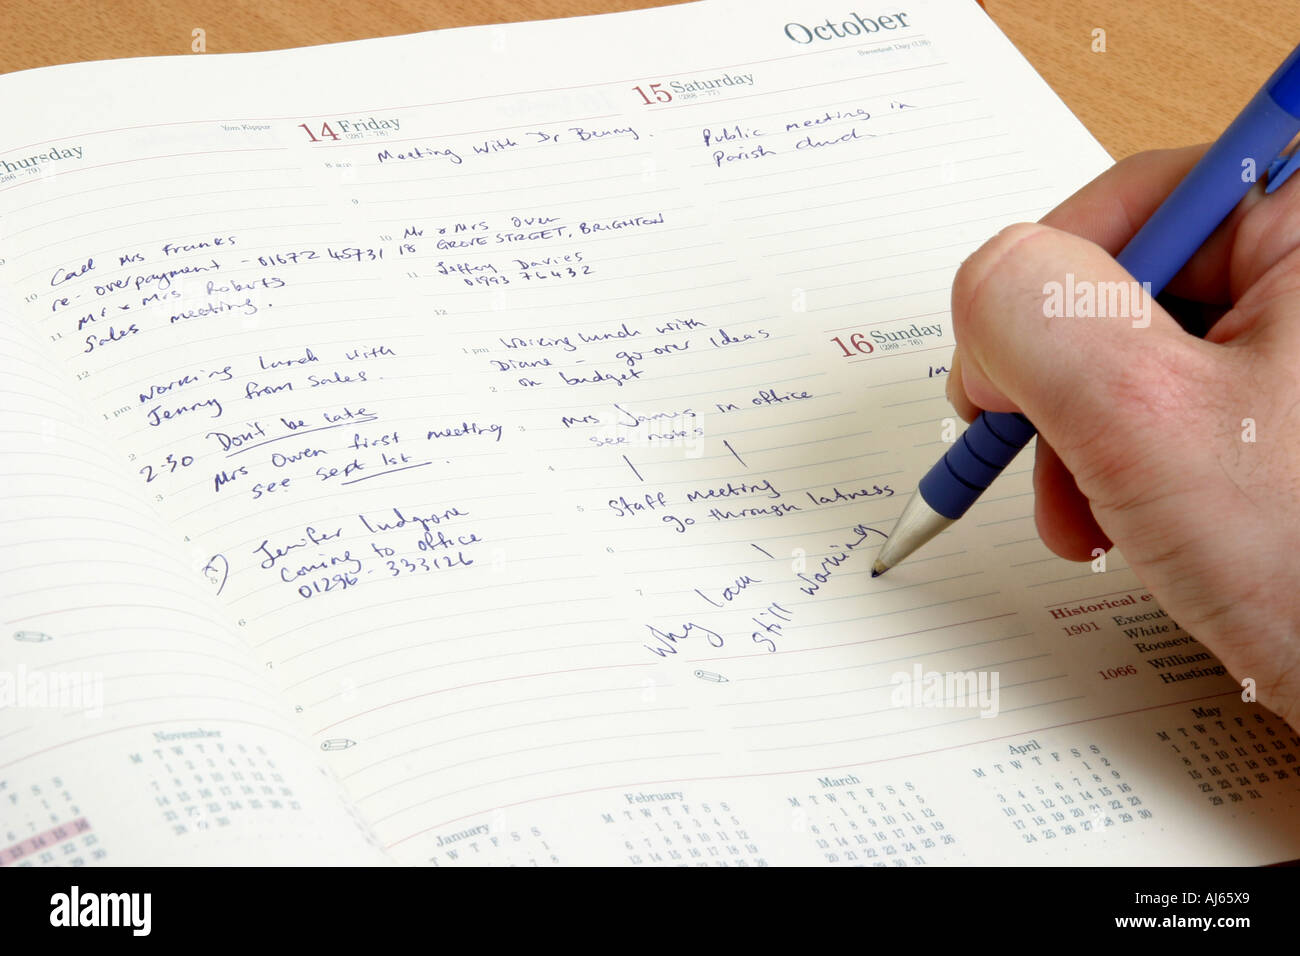 Un diario di pianificare con qualcuno che scrive un messaggio attraverso la pagina. Foto Stock